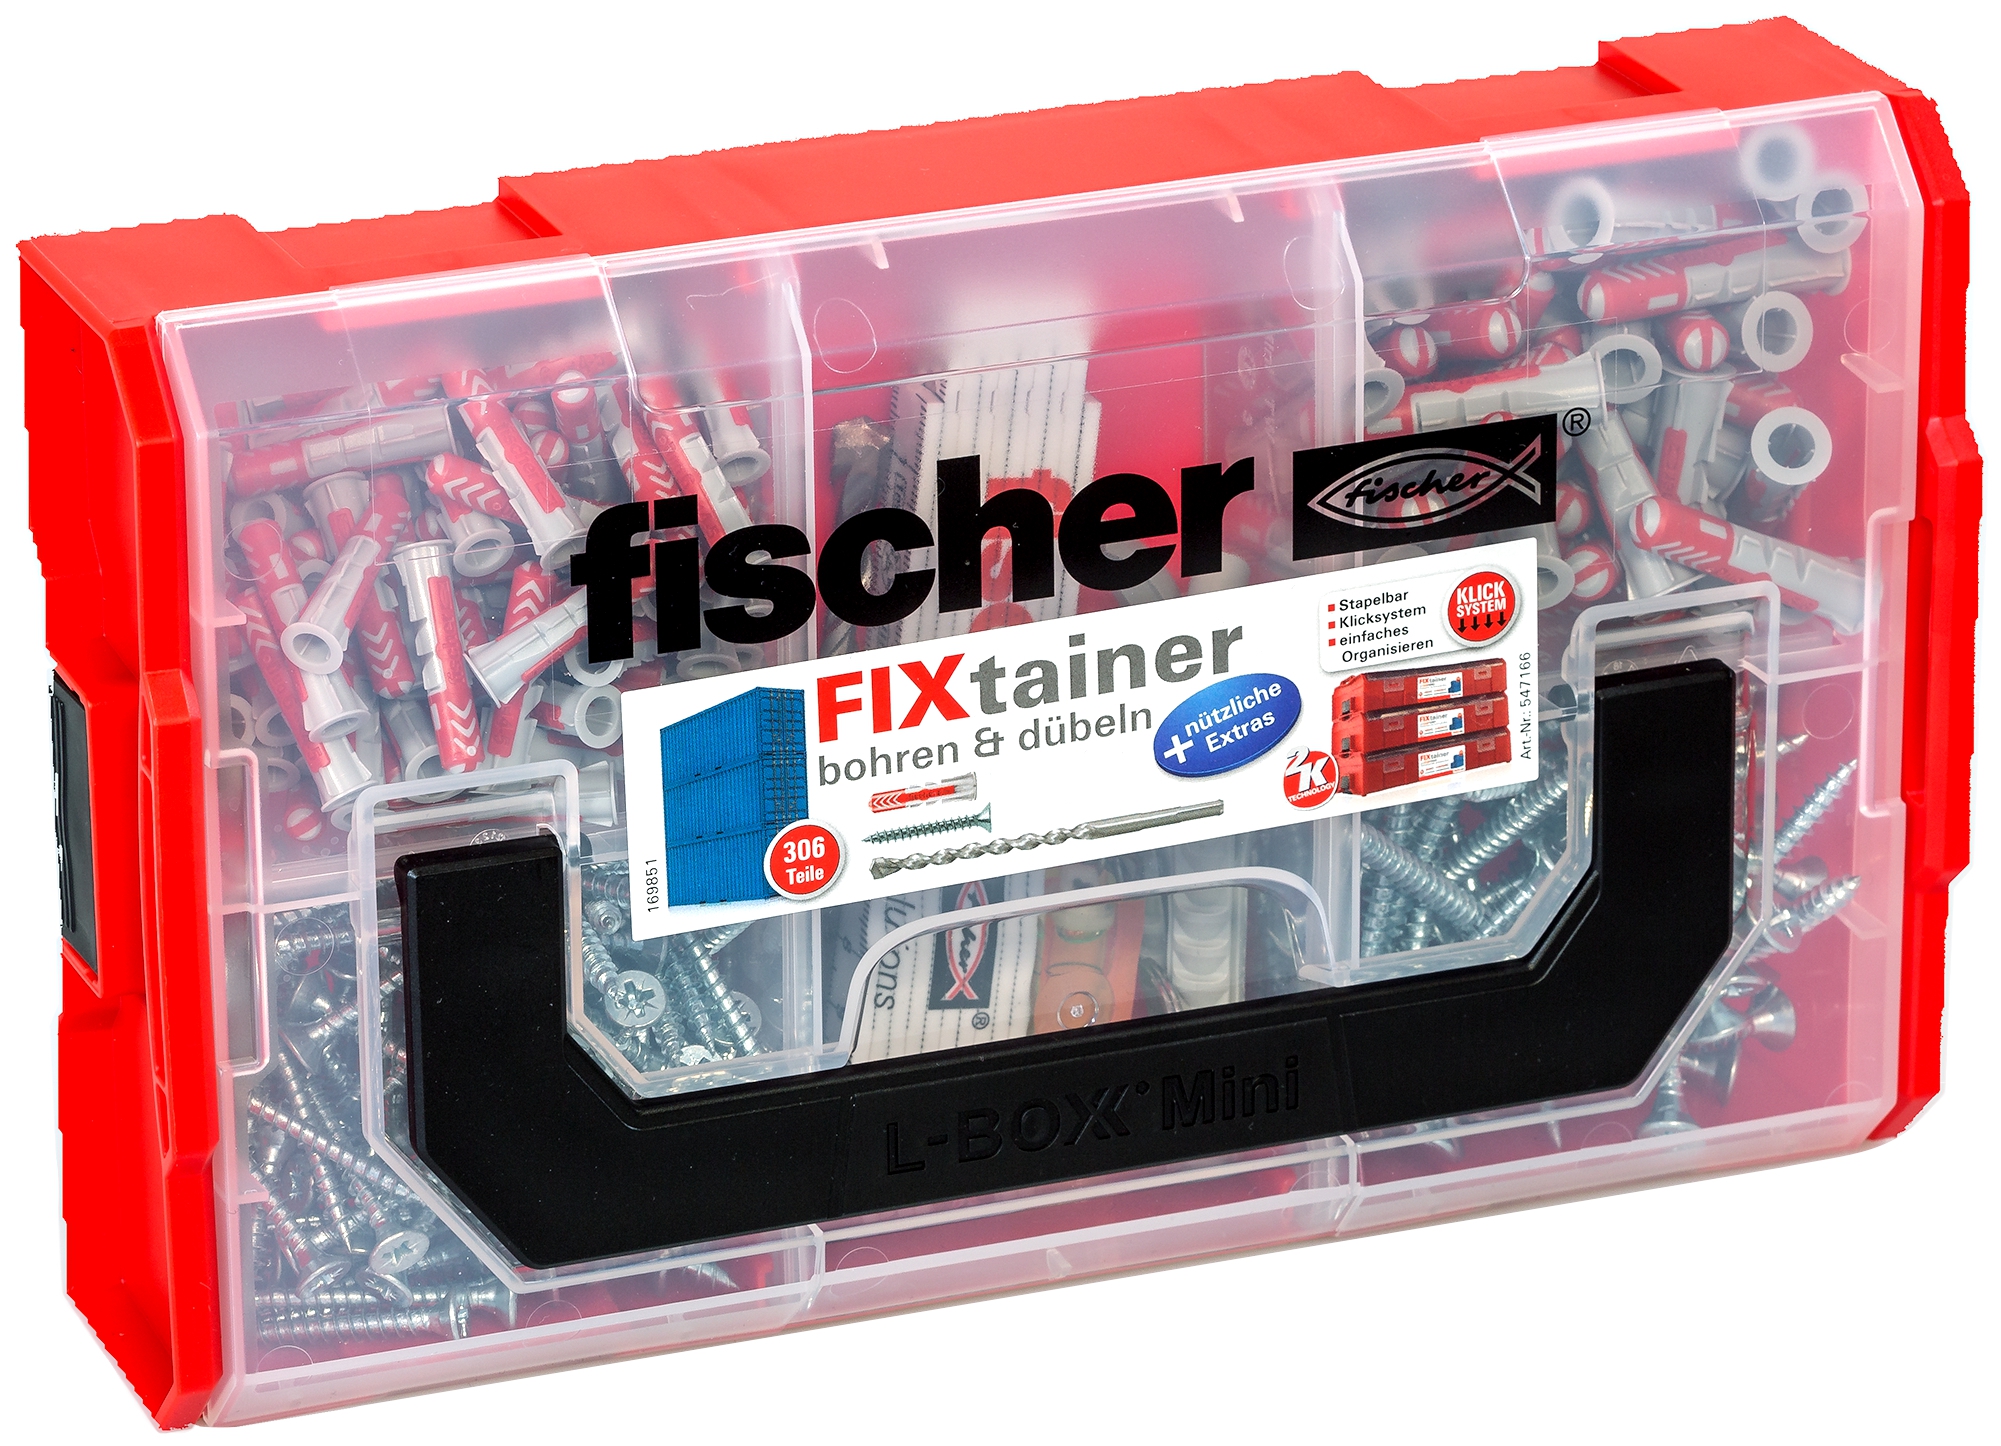 Fischer FixTainer - bohren und dübeln. Fischer FixTainer - mit dem Duo aus Power und Schlauer + nützlichen Extras